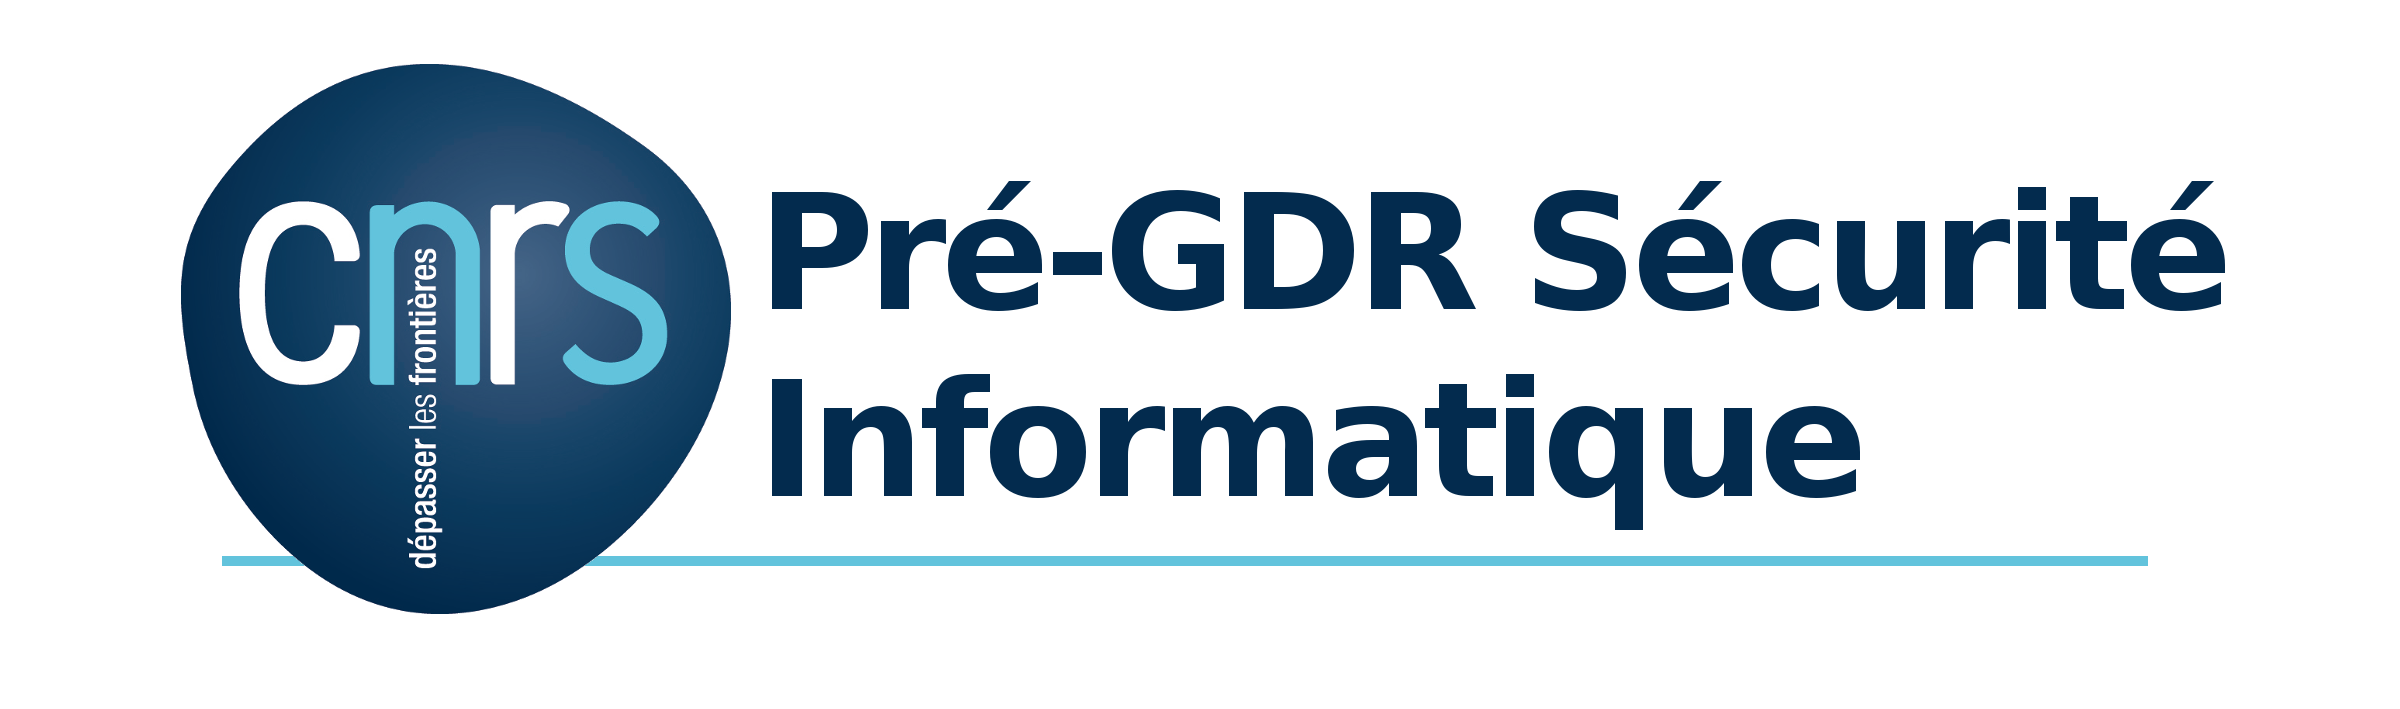 Logo PGDR